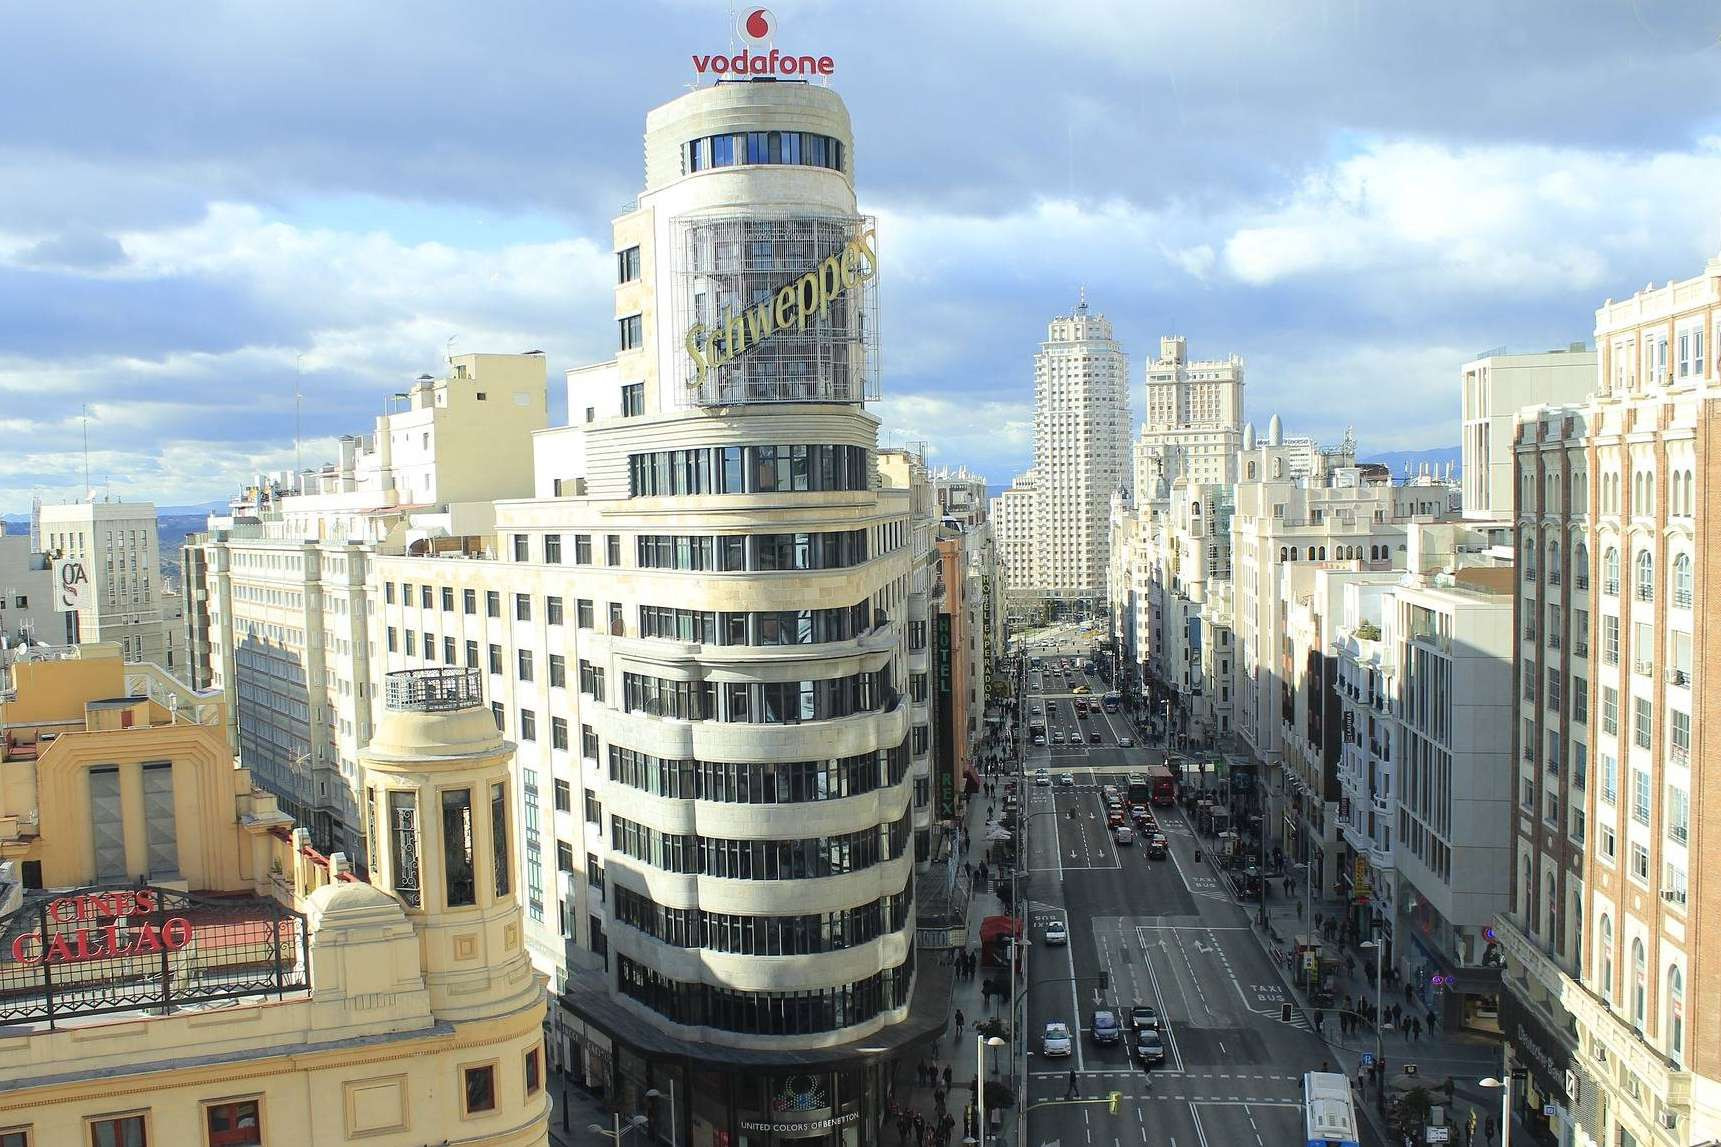  Comprar o vender una propiedad en Madrid con el apoyo de los expertos de Inversión Madrid 